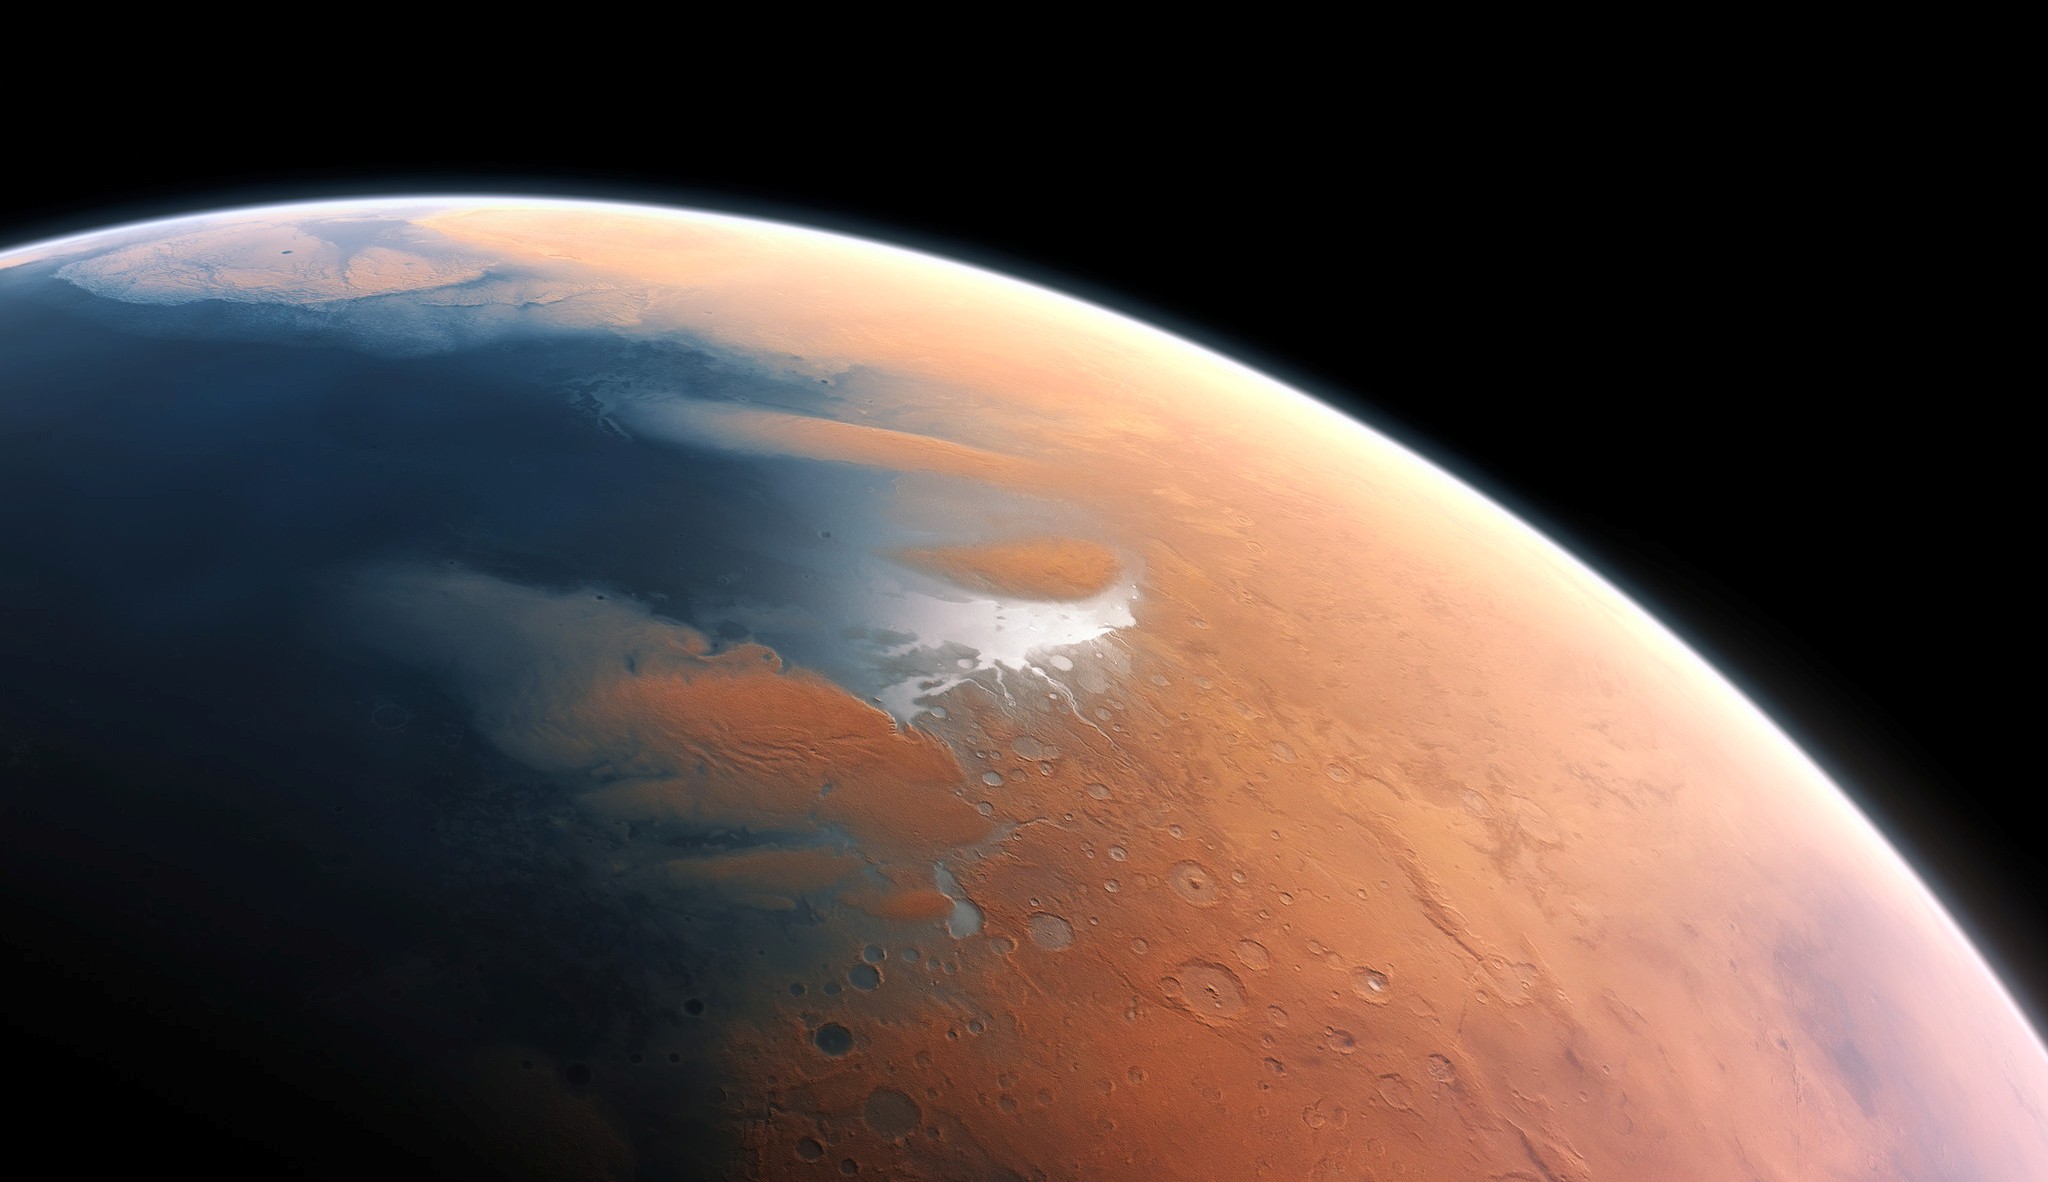 Cette vue d'artiste montre&nbsp;à quoi devait ressembler Mars voici quatre milliards d'années. La toute jeune planète devait renfermer suffisamment d'eau liquide pour que l'intégralité de sa surface en soit couverte, sur une hauteur d’environ 140 mètres. Il semble plus probable toutefois que l'eau liquide se soit constituée en un océan occupant près de la moitié de l'hémisphère nord de la planète. Dans certaines régions, la profondeur de cet océan pouvait dépasser 1,6 kilomètre.&nbsp;© ESO, M. Kornmesser